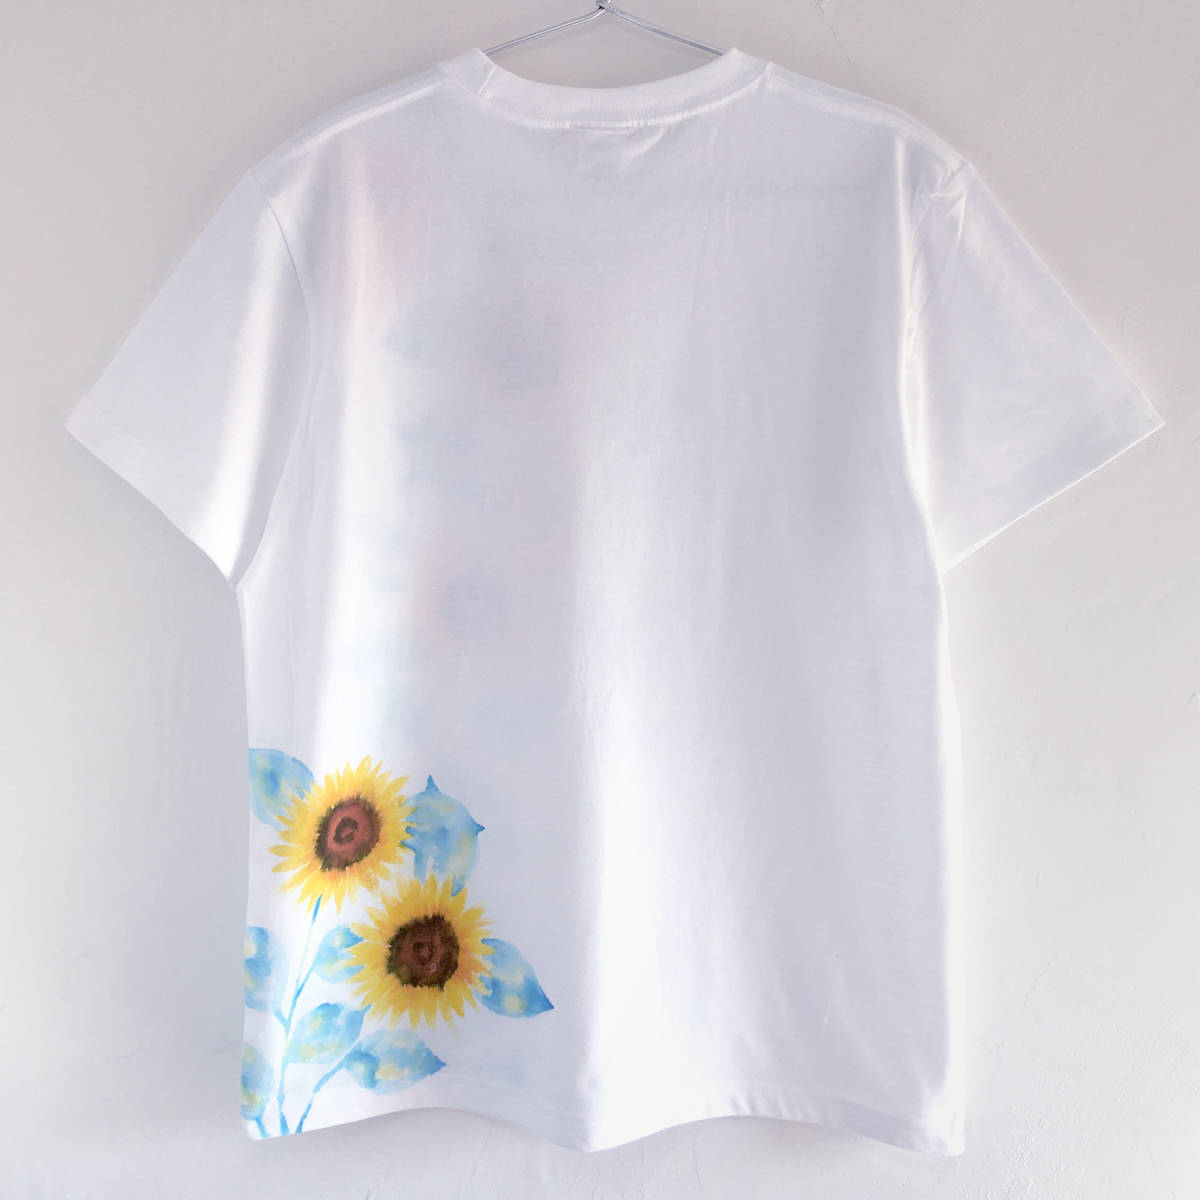 メンズ Tシャツ Sサイズ 白 ひまわり柄Tシャツ ホワイト ハンドメイド 手描きTシャツ 和柄_画像3